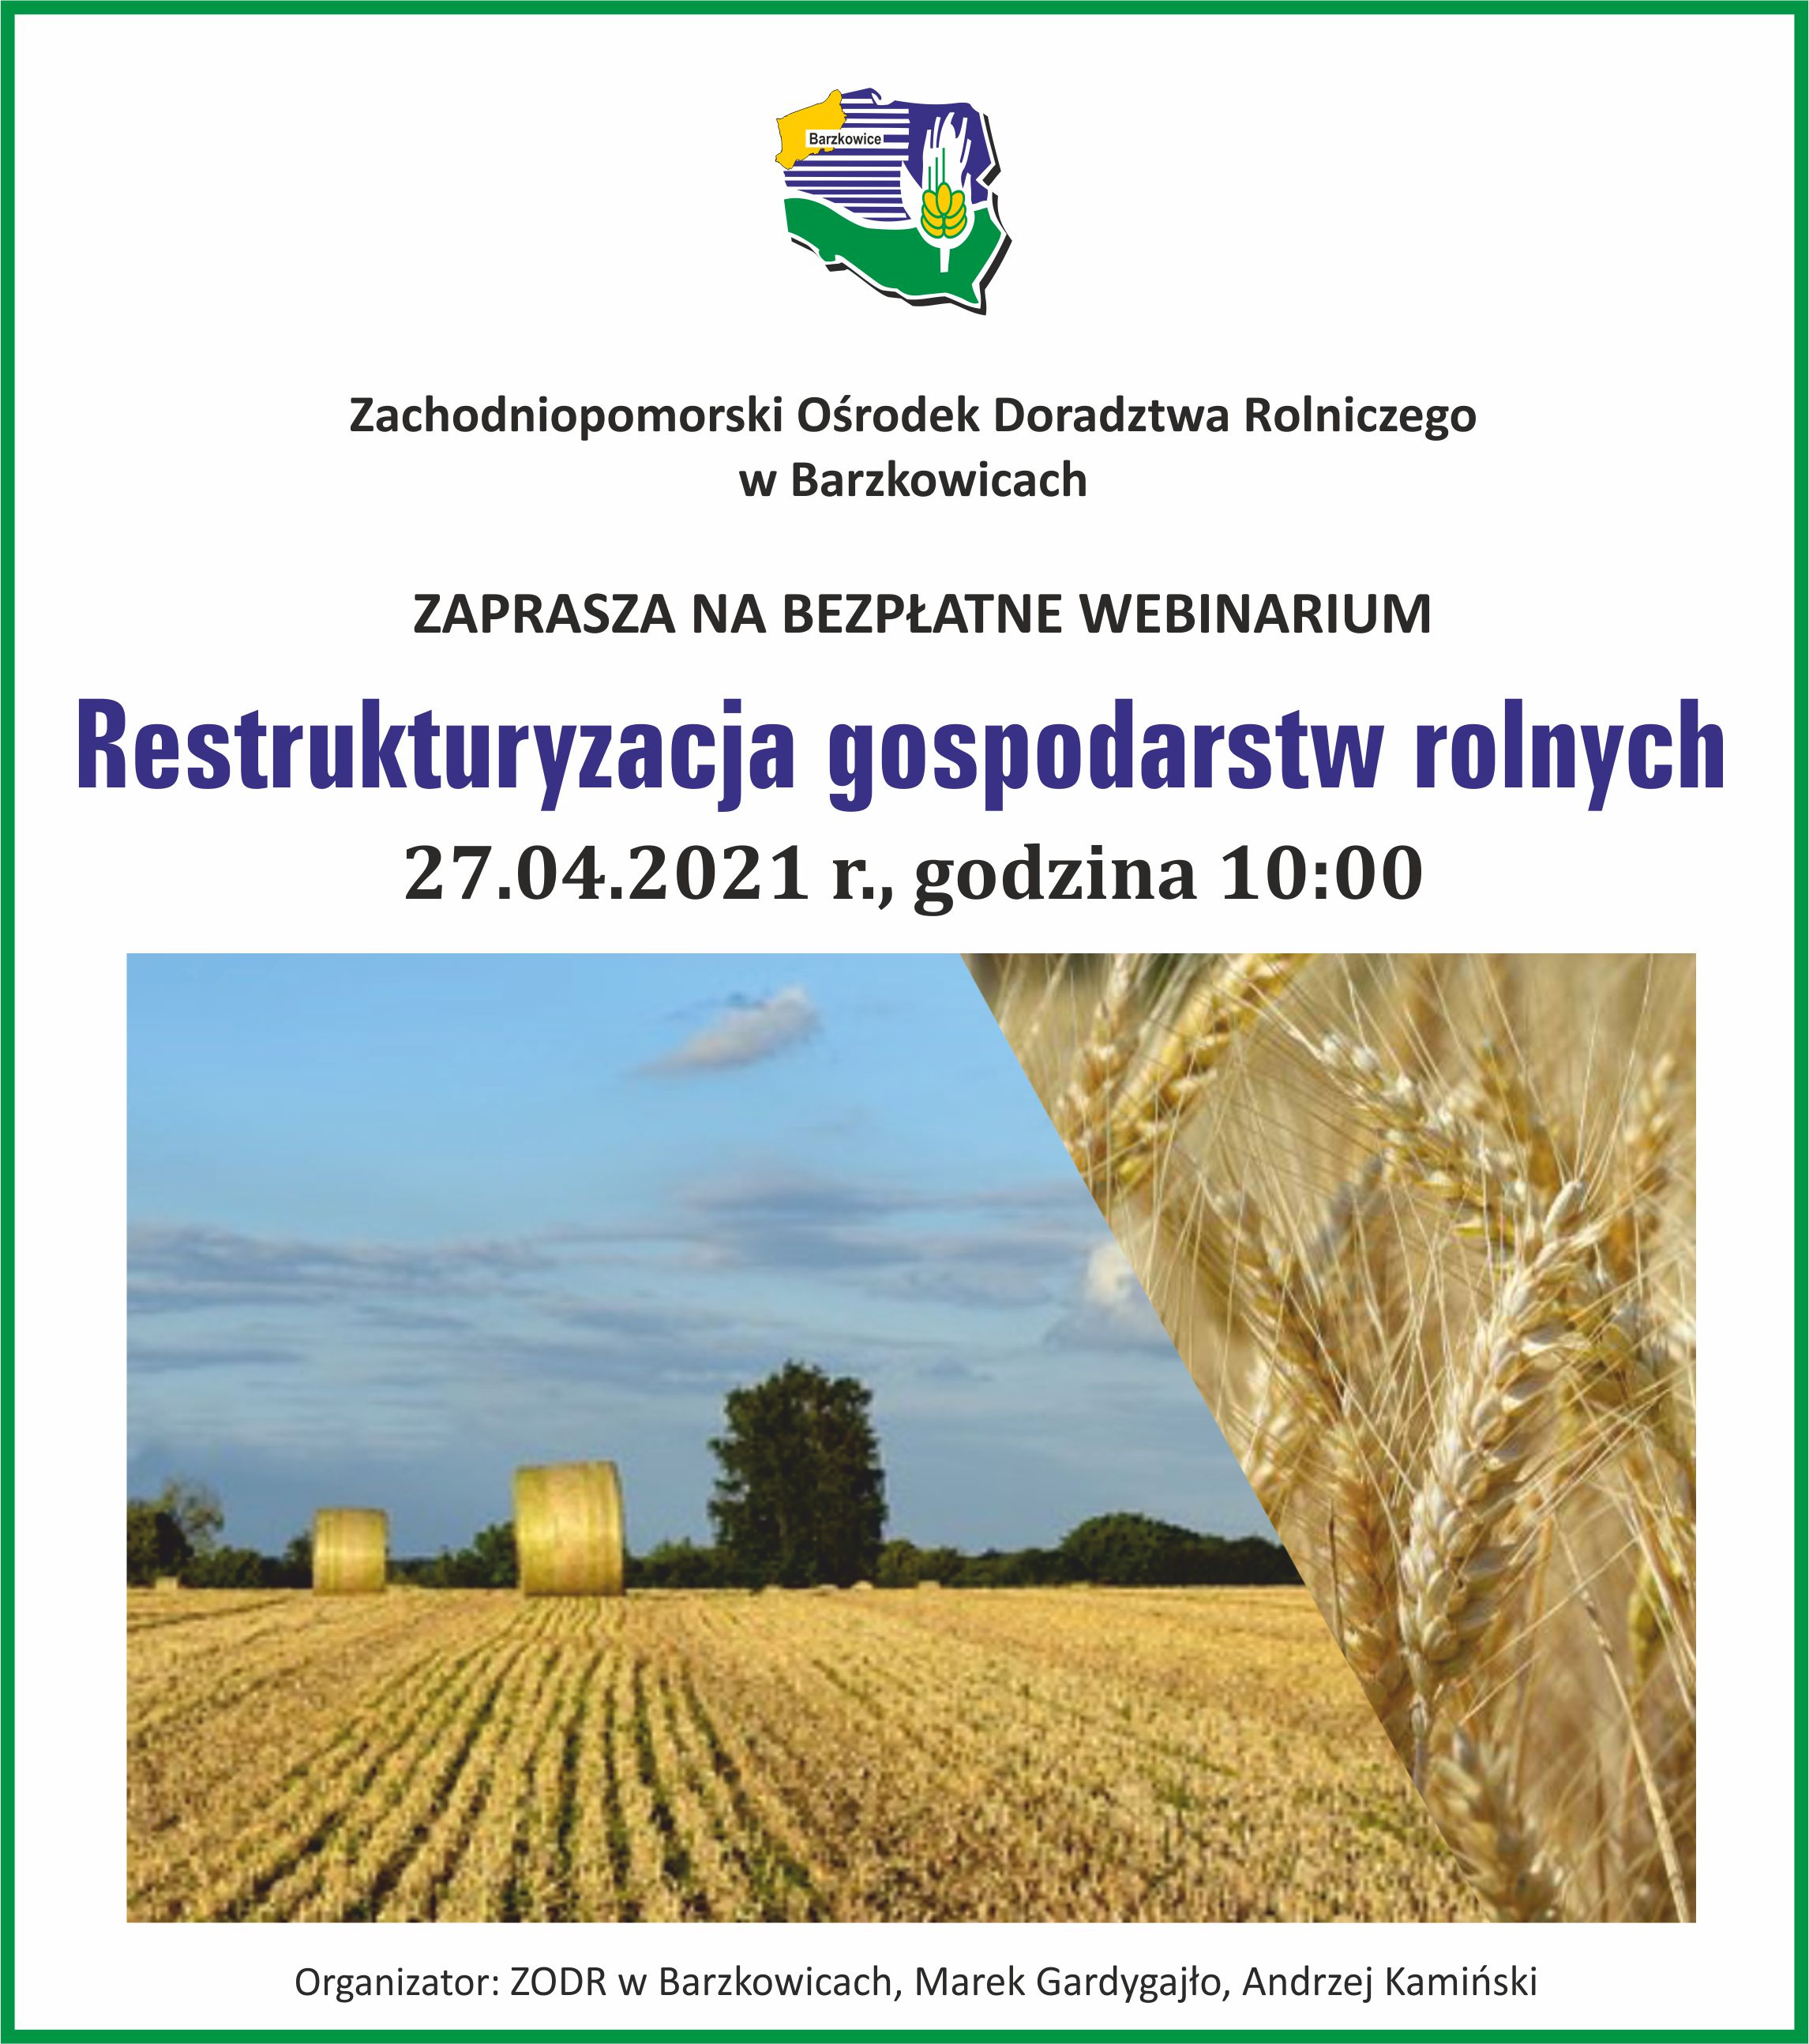 Zaproszenie do udziału w webinarium „Restrukturyzacja gospodarstw rolnych”